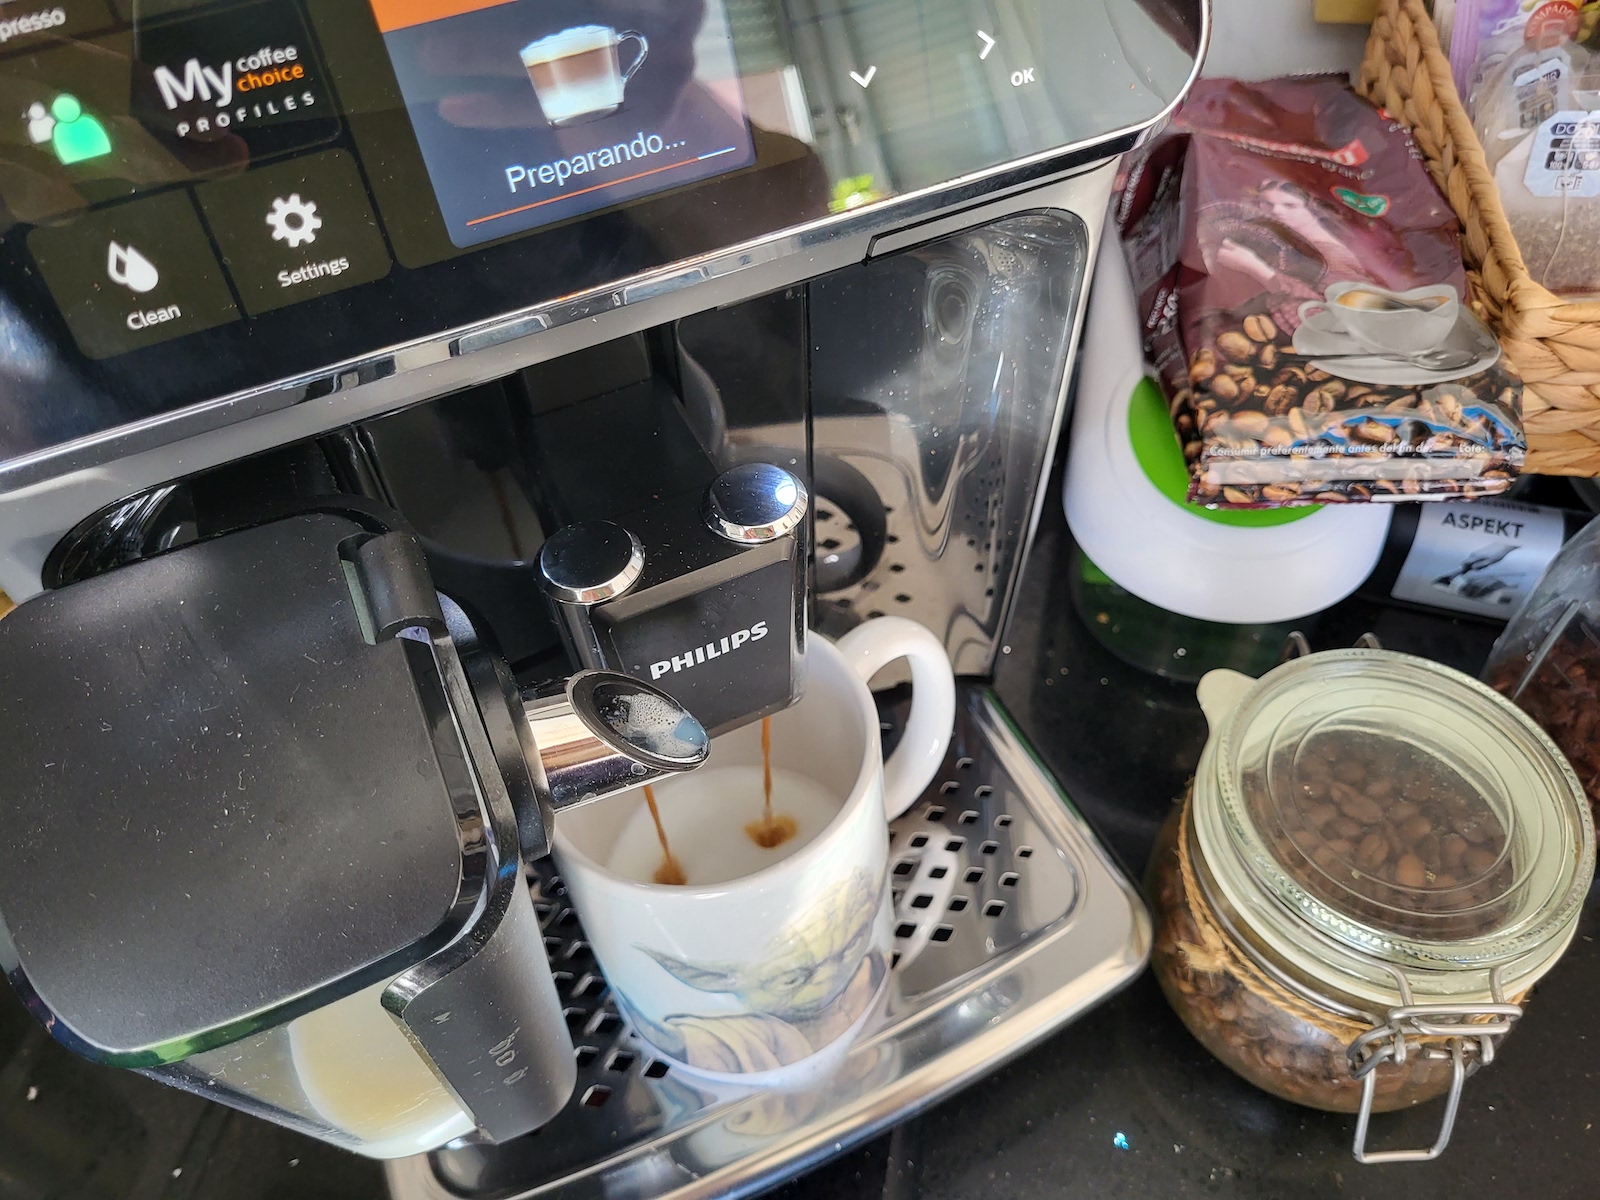 Philips 5400: Lee antes de comprar esta cafetera super automática de  espresso